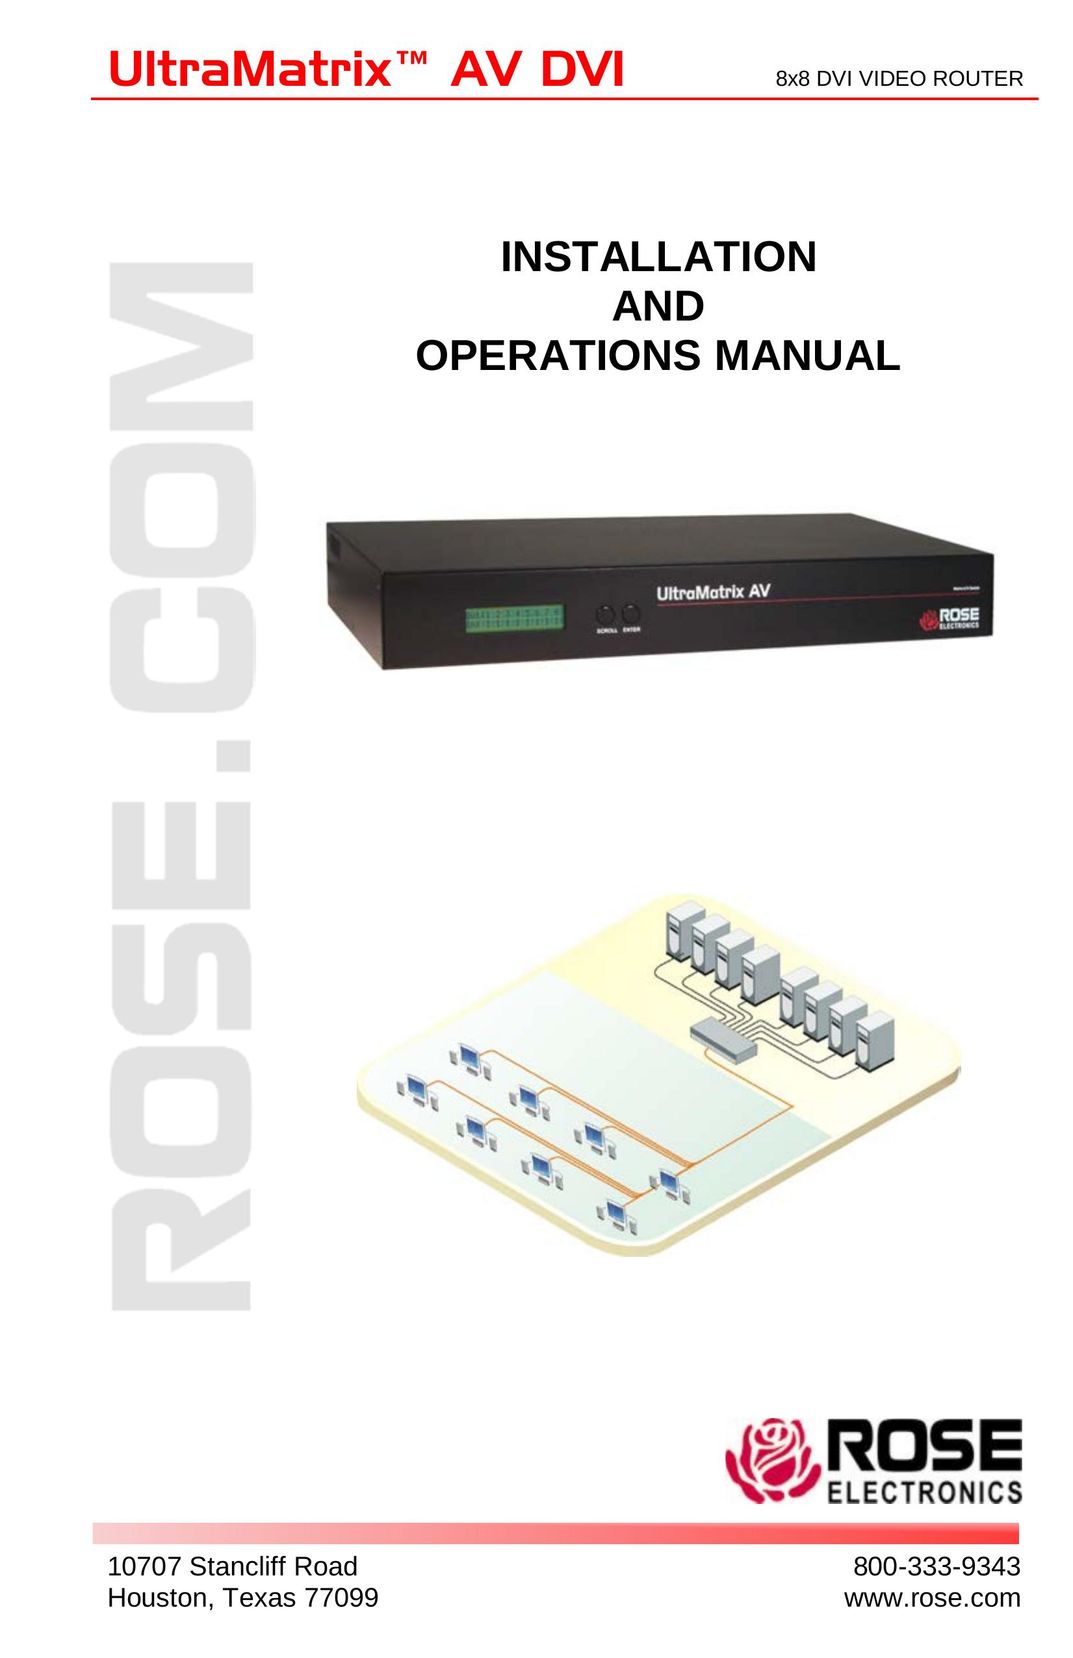 Rose electronic ultramatrix av dvi 8x8 dvi video router TV DVD Combo User Manual